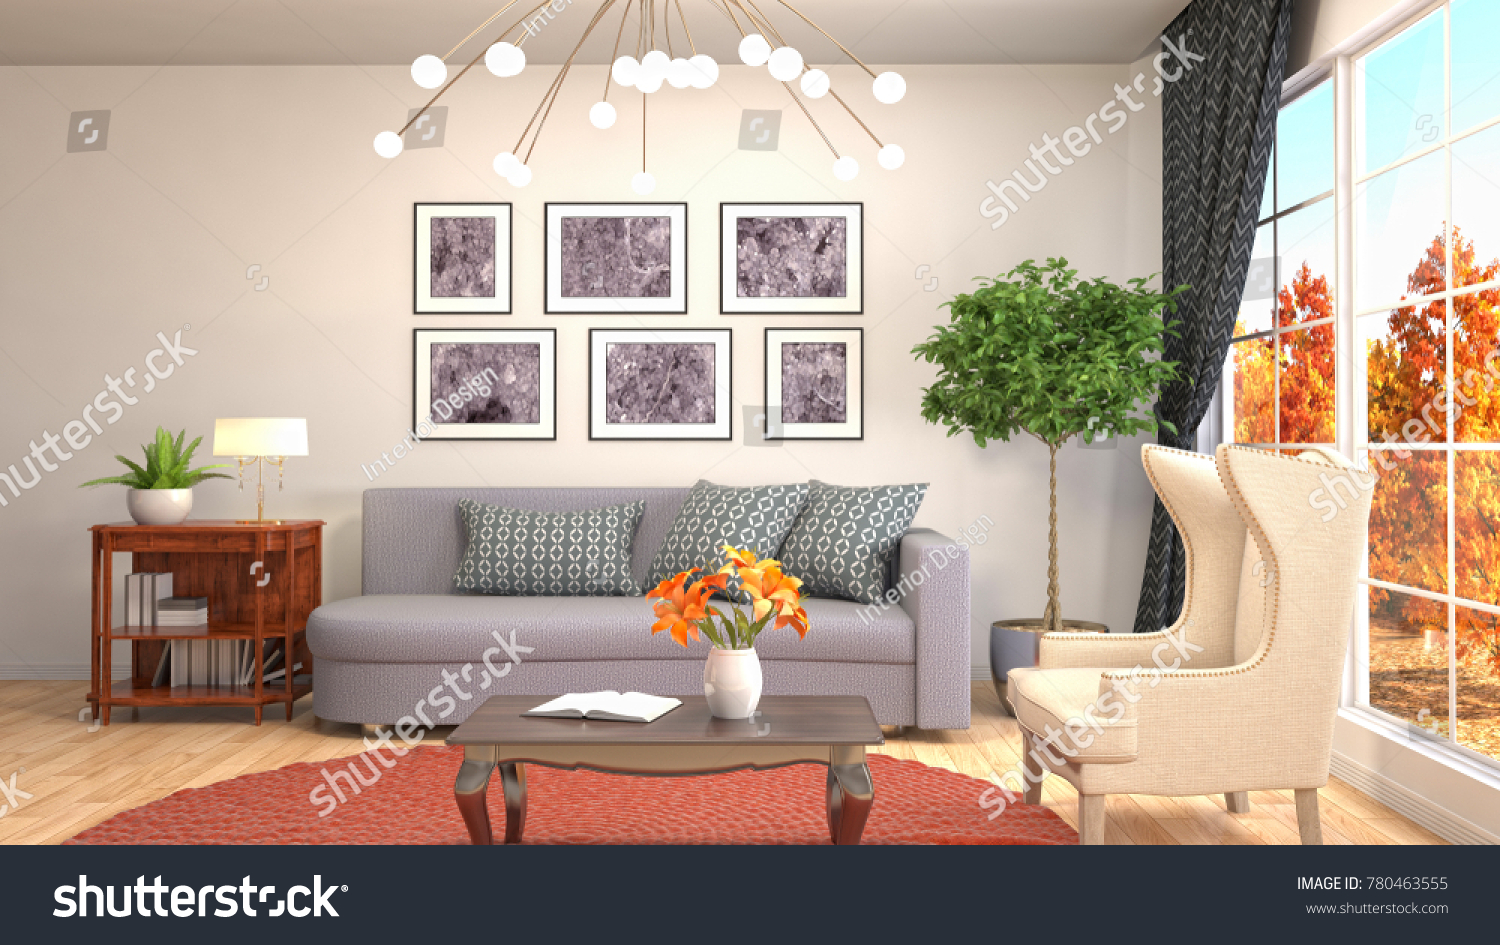 Interior living room. 3d illustration #780463555